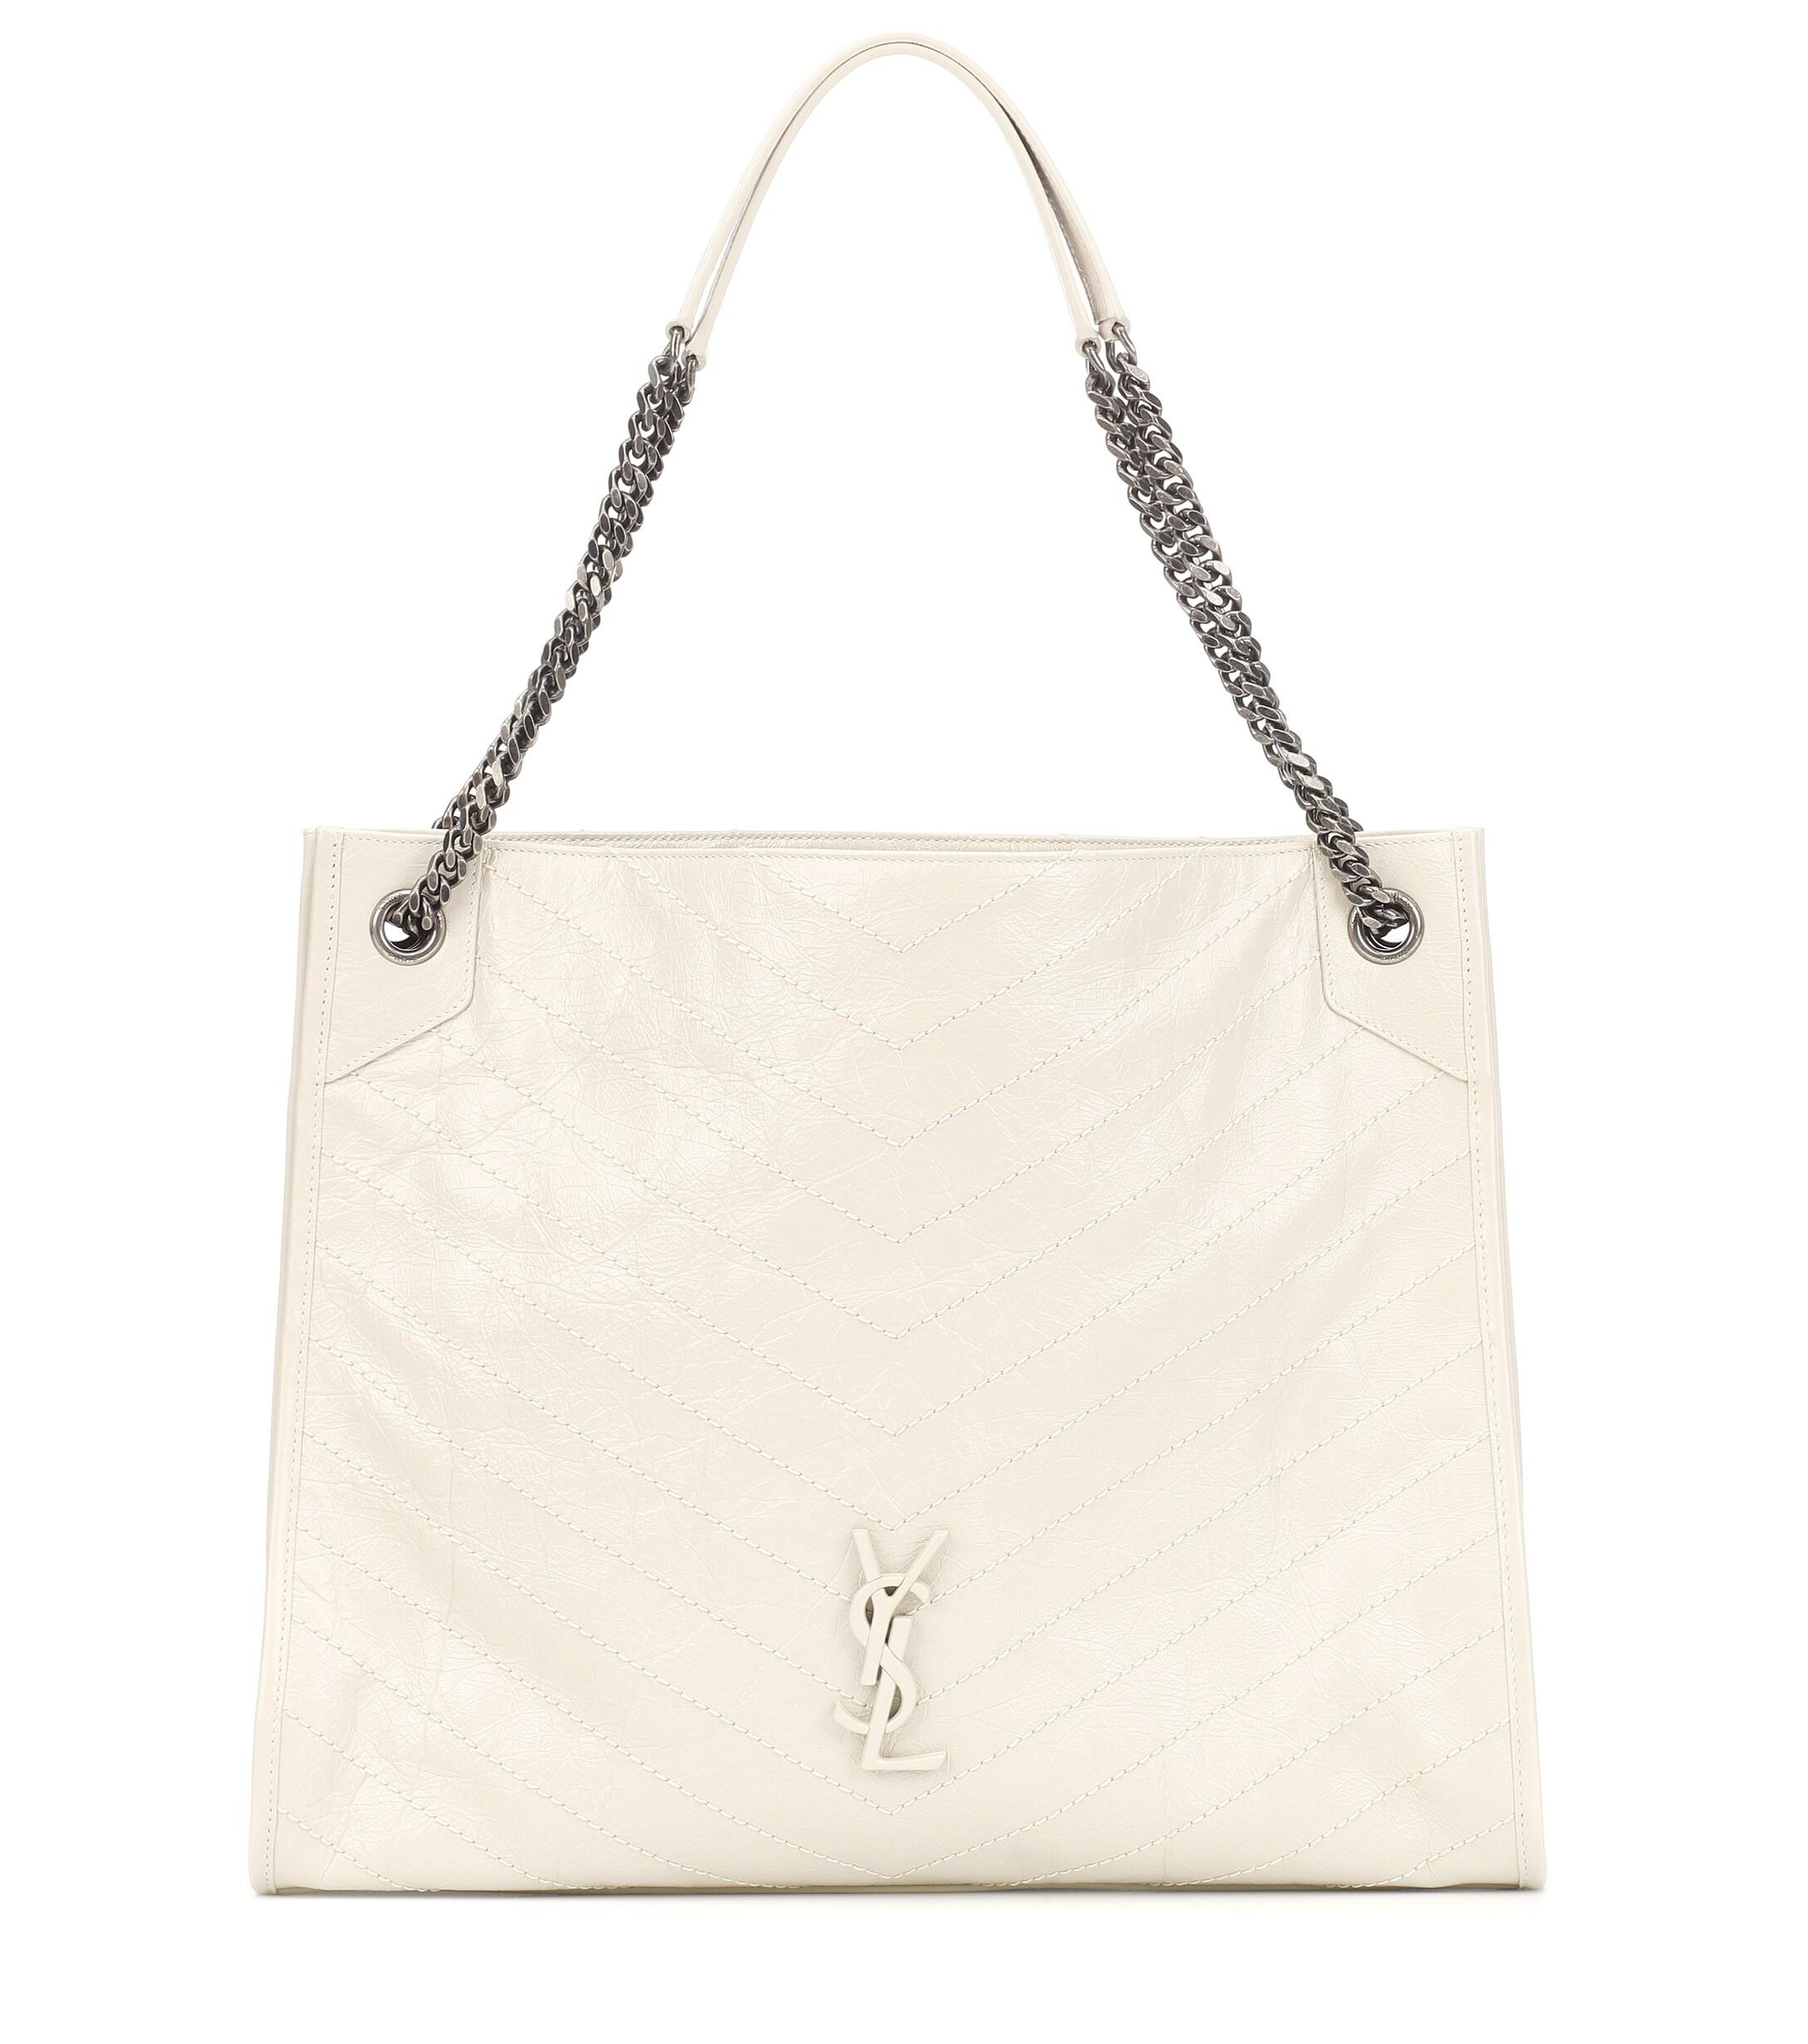 Saint Laurent Niki Large Leather Monogram Shopper Bag in White